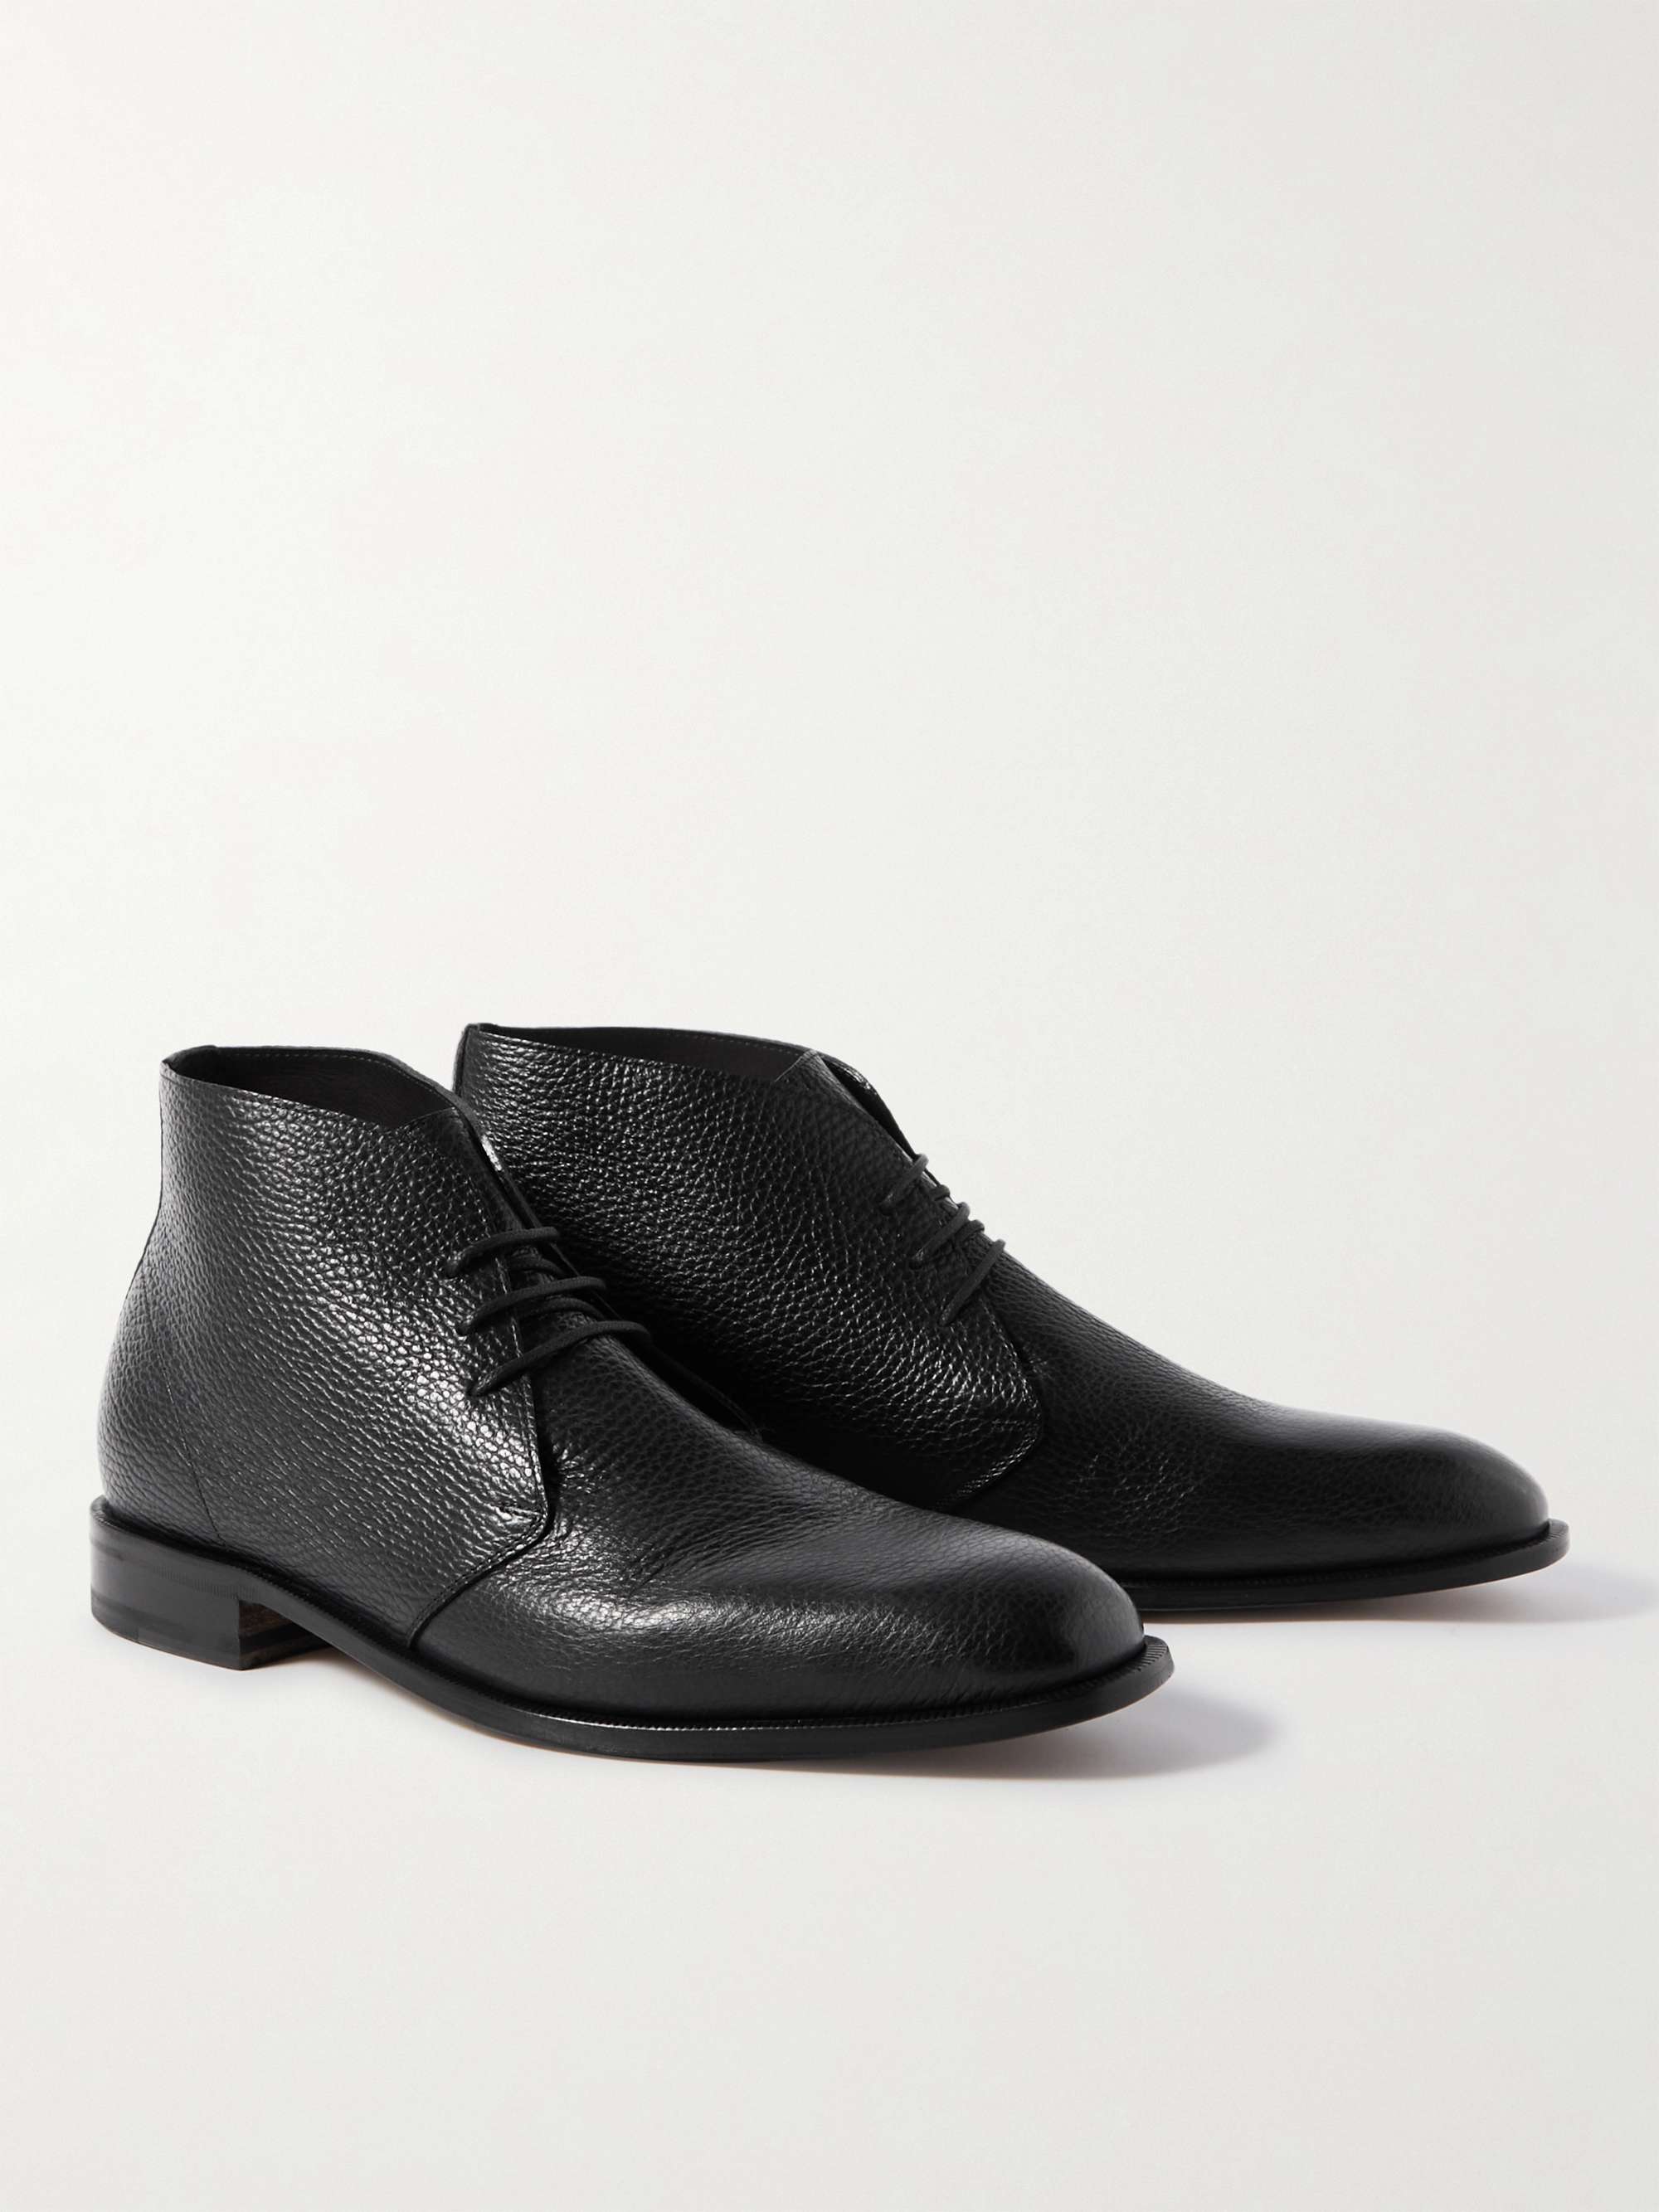 MANOLO BLAHNIK Berwick Full-Grain Leather Chukka Boots for Men | MR PORTER